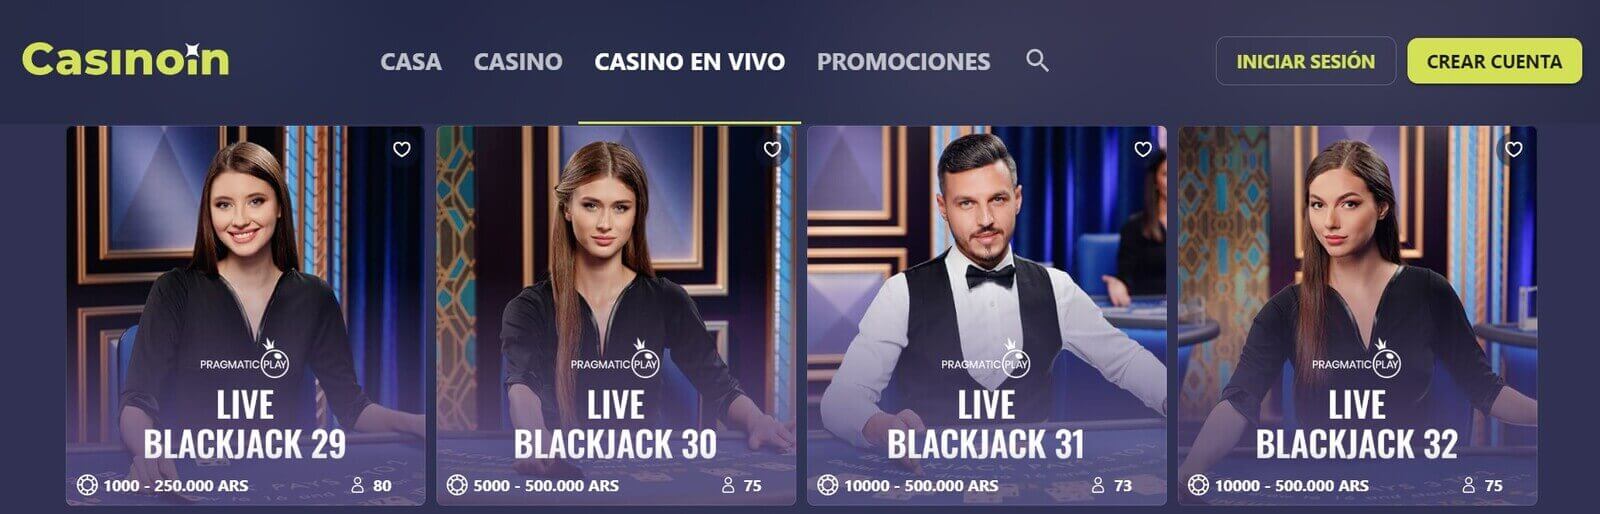 Mejores juegos de casino en vivo de CasinoIn online